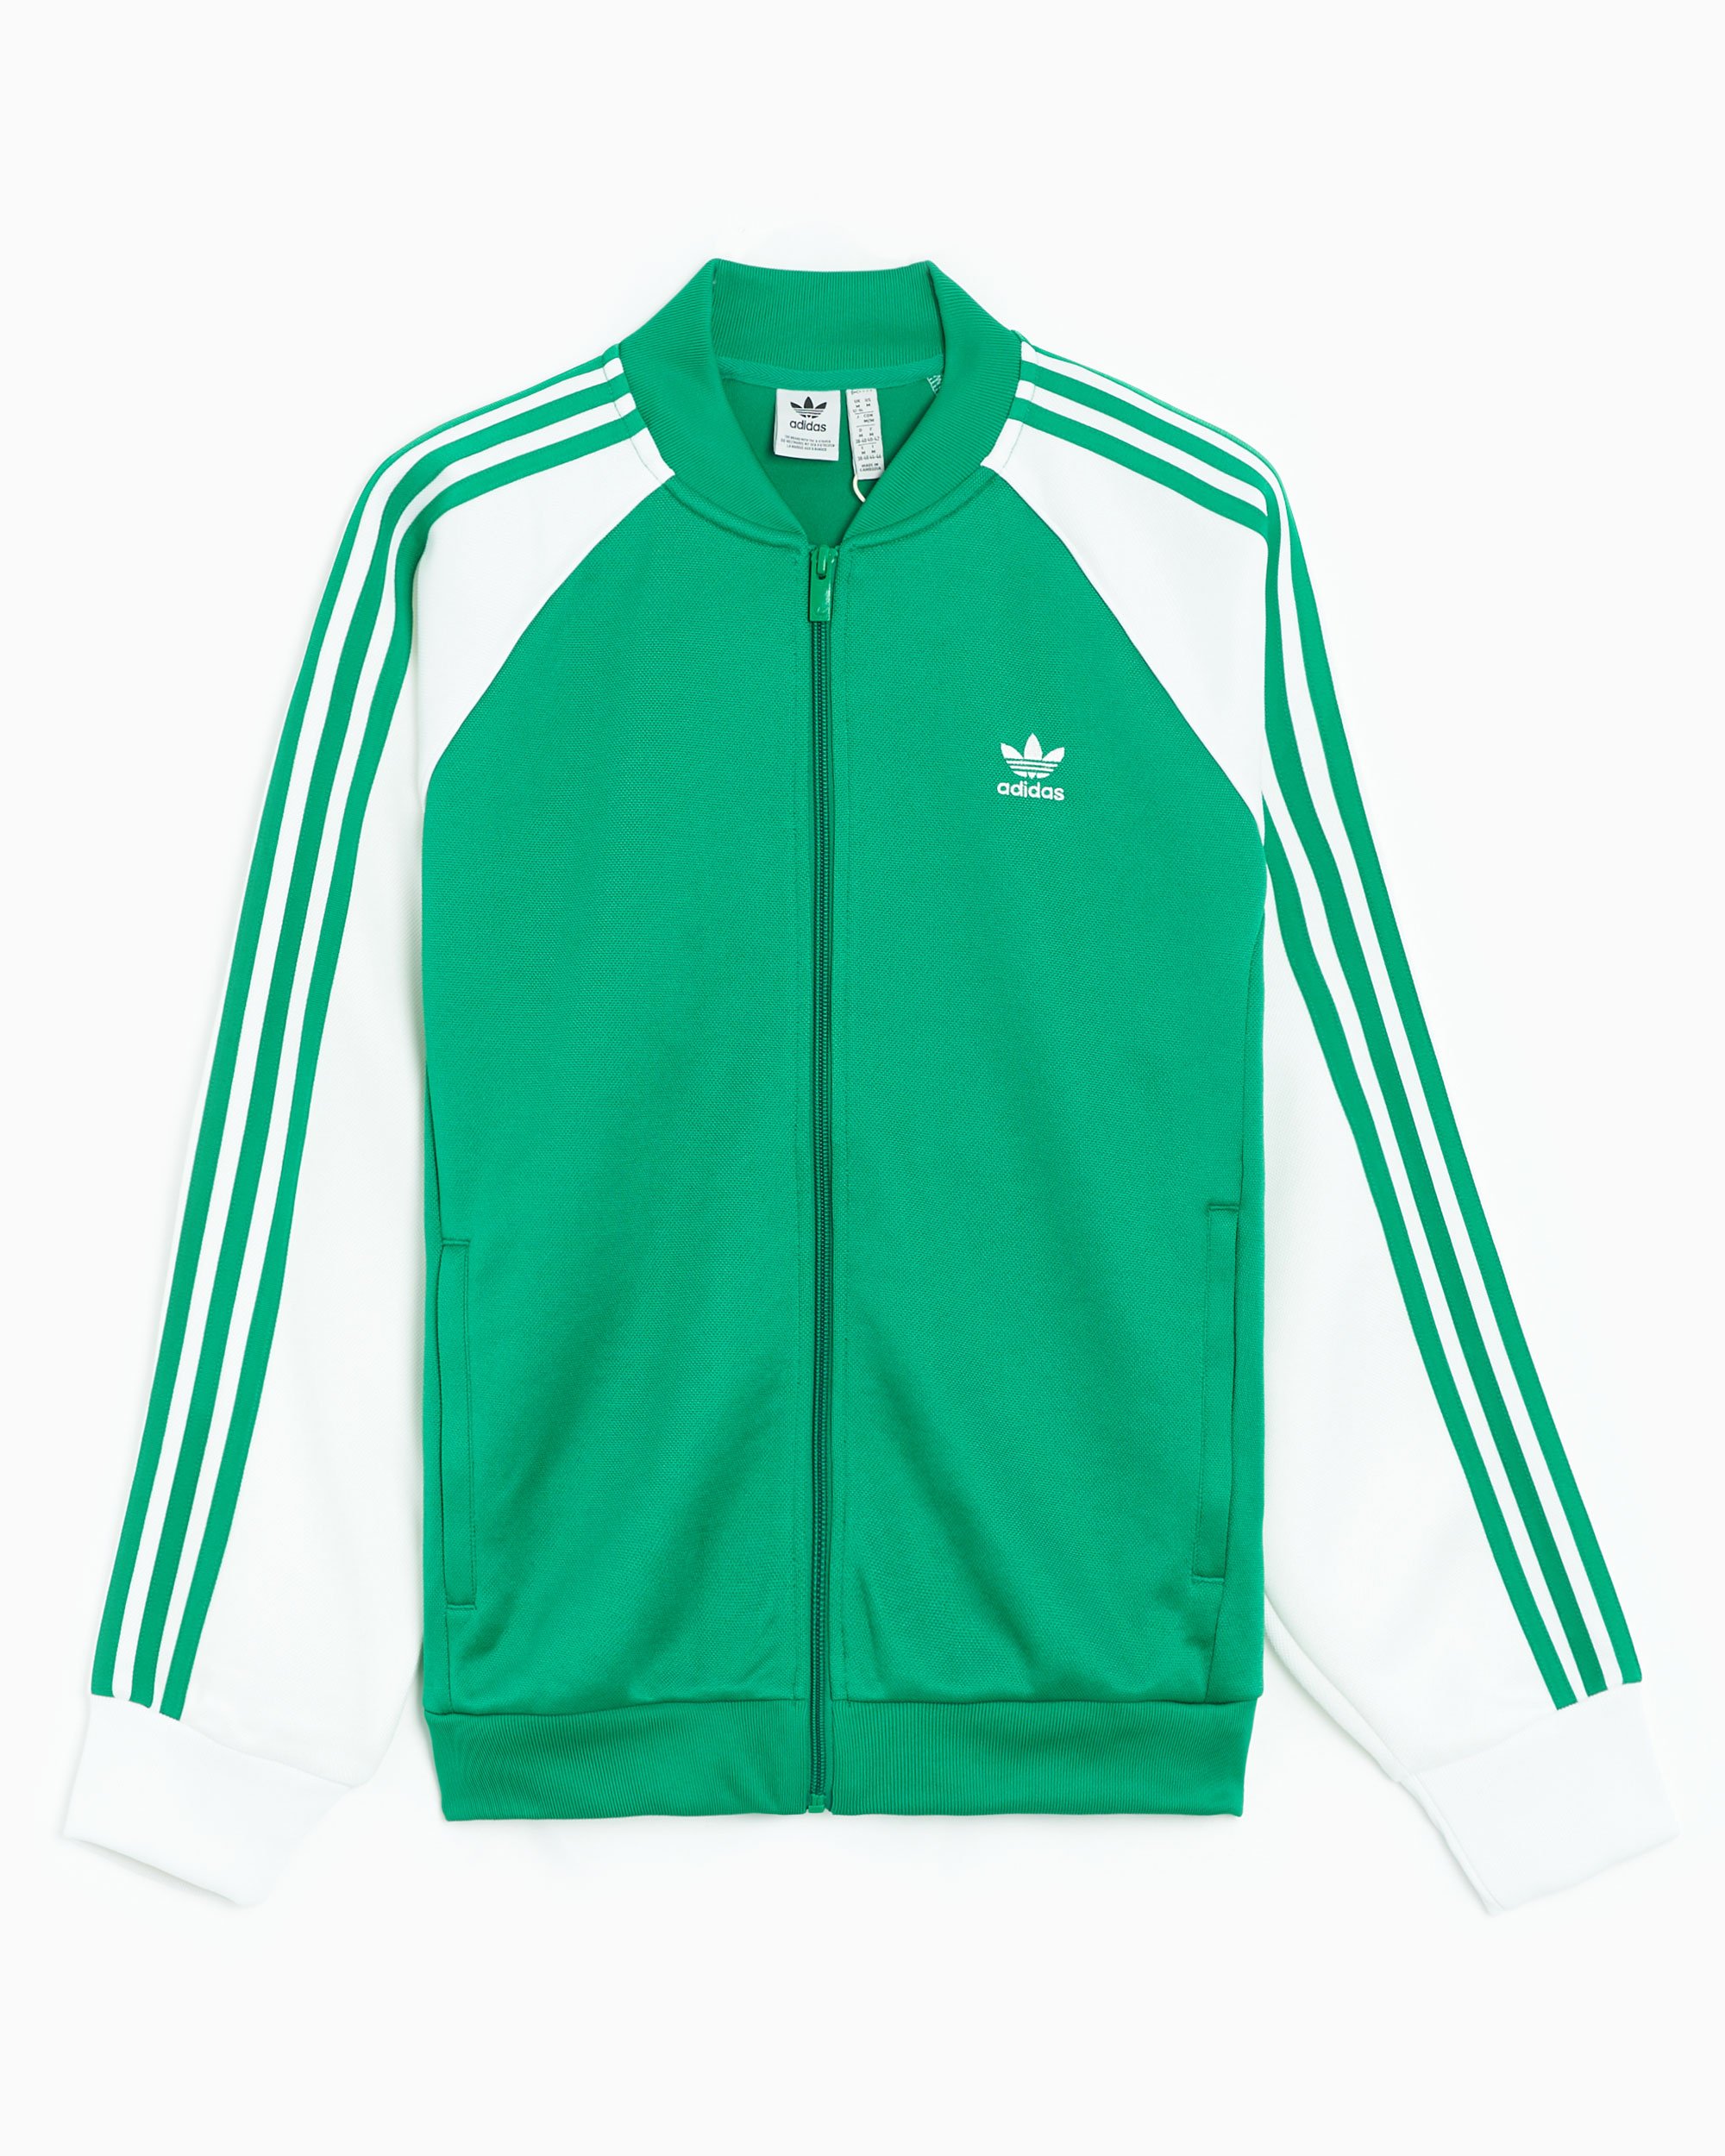 adidas Originals SST Women's Track Jacket Green, White IK0421